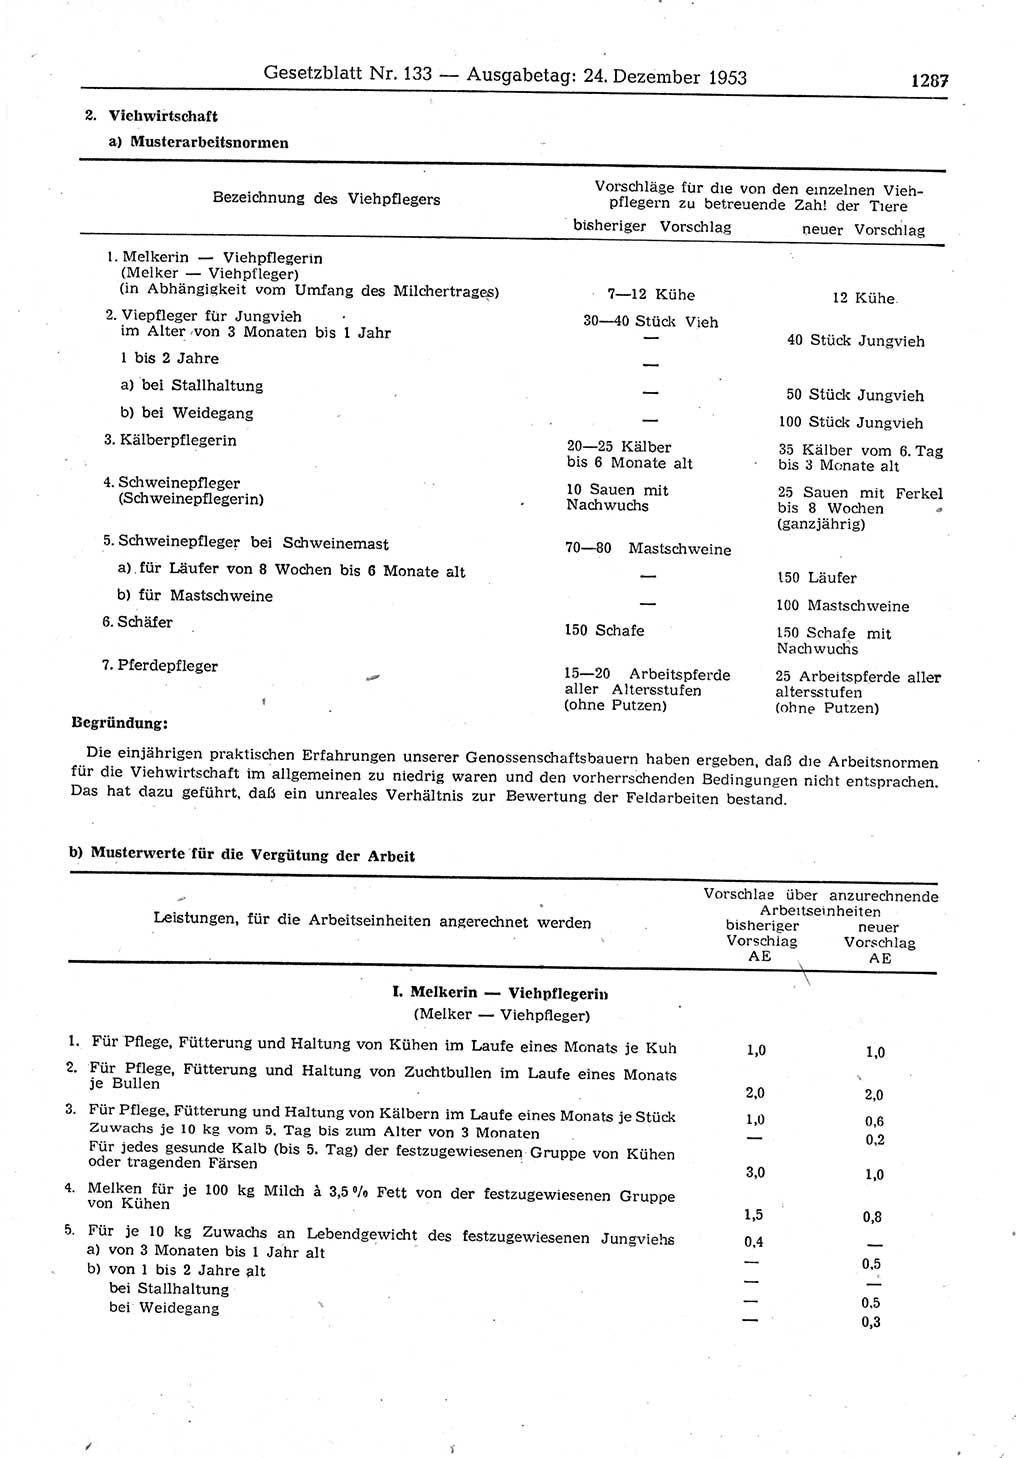 Gesetzblatt (GBl.) der Deutschen Demokratischen Republik (DDR) 1953, Seite 1287 (GBl. DDR 1953, S. 1287)